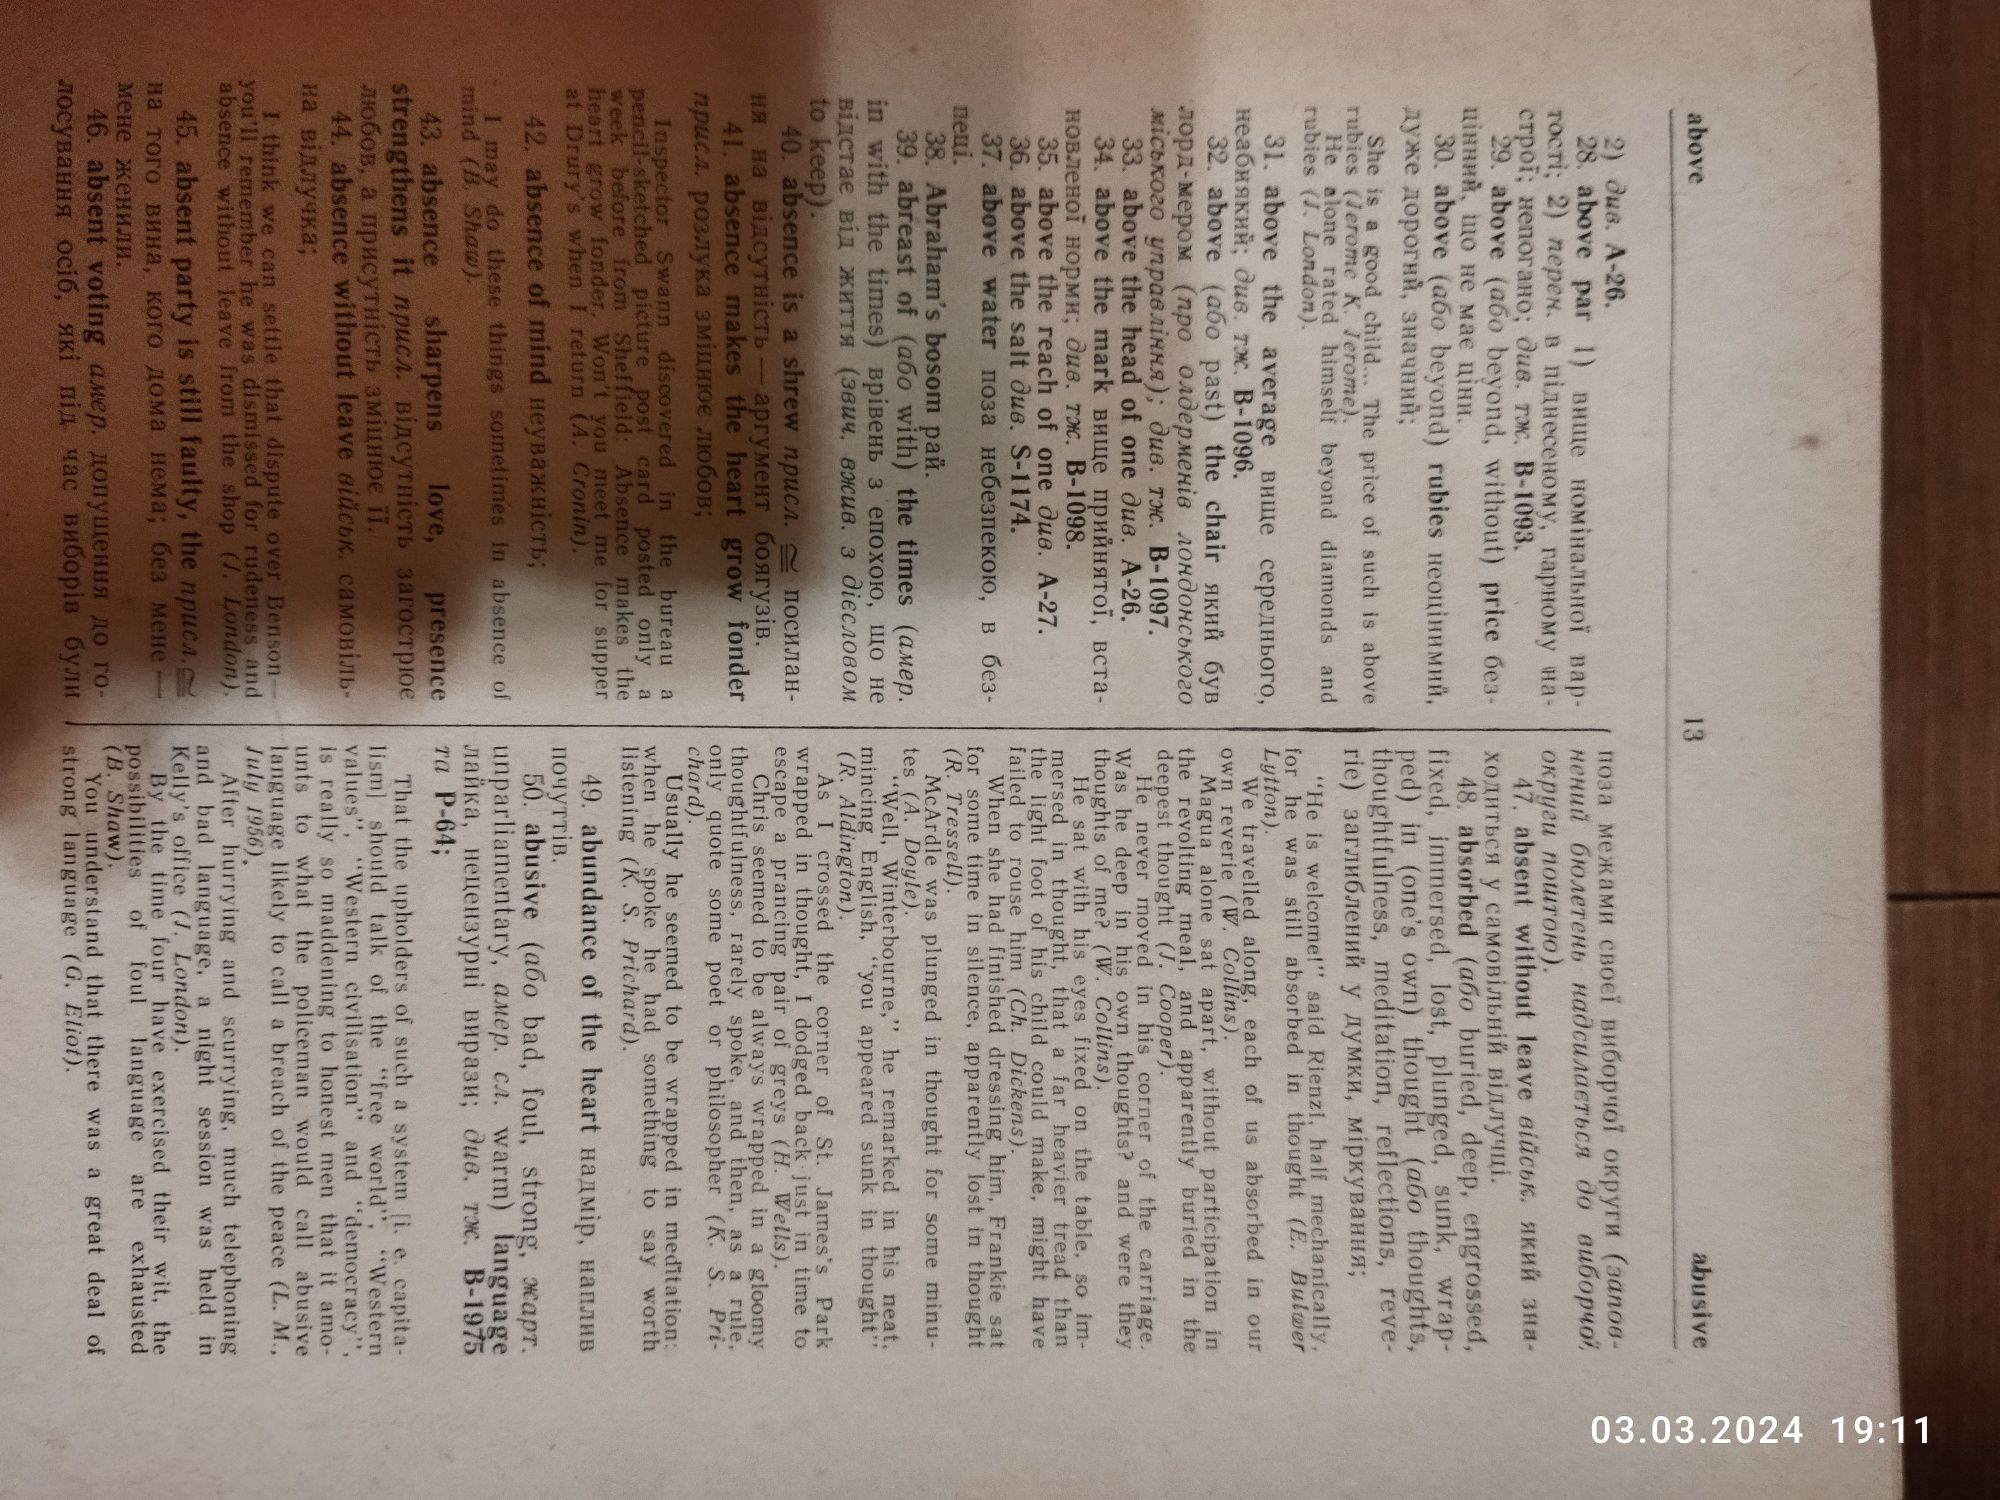 Баранцев К. Т. Англо-український фразеологічний словник, 1969, 1052 с.